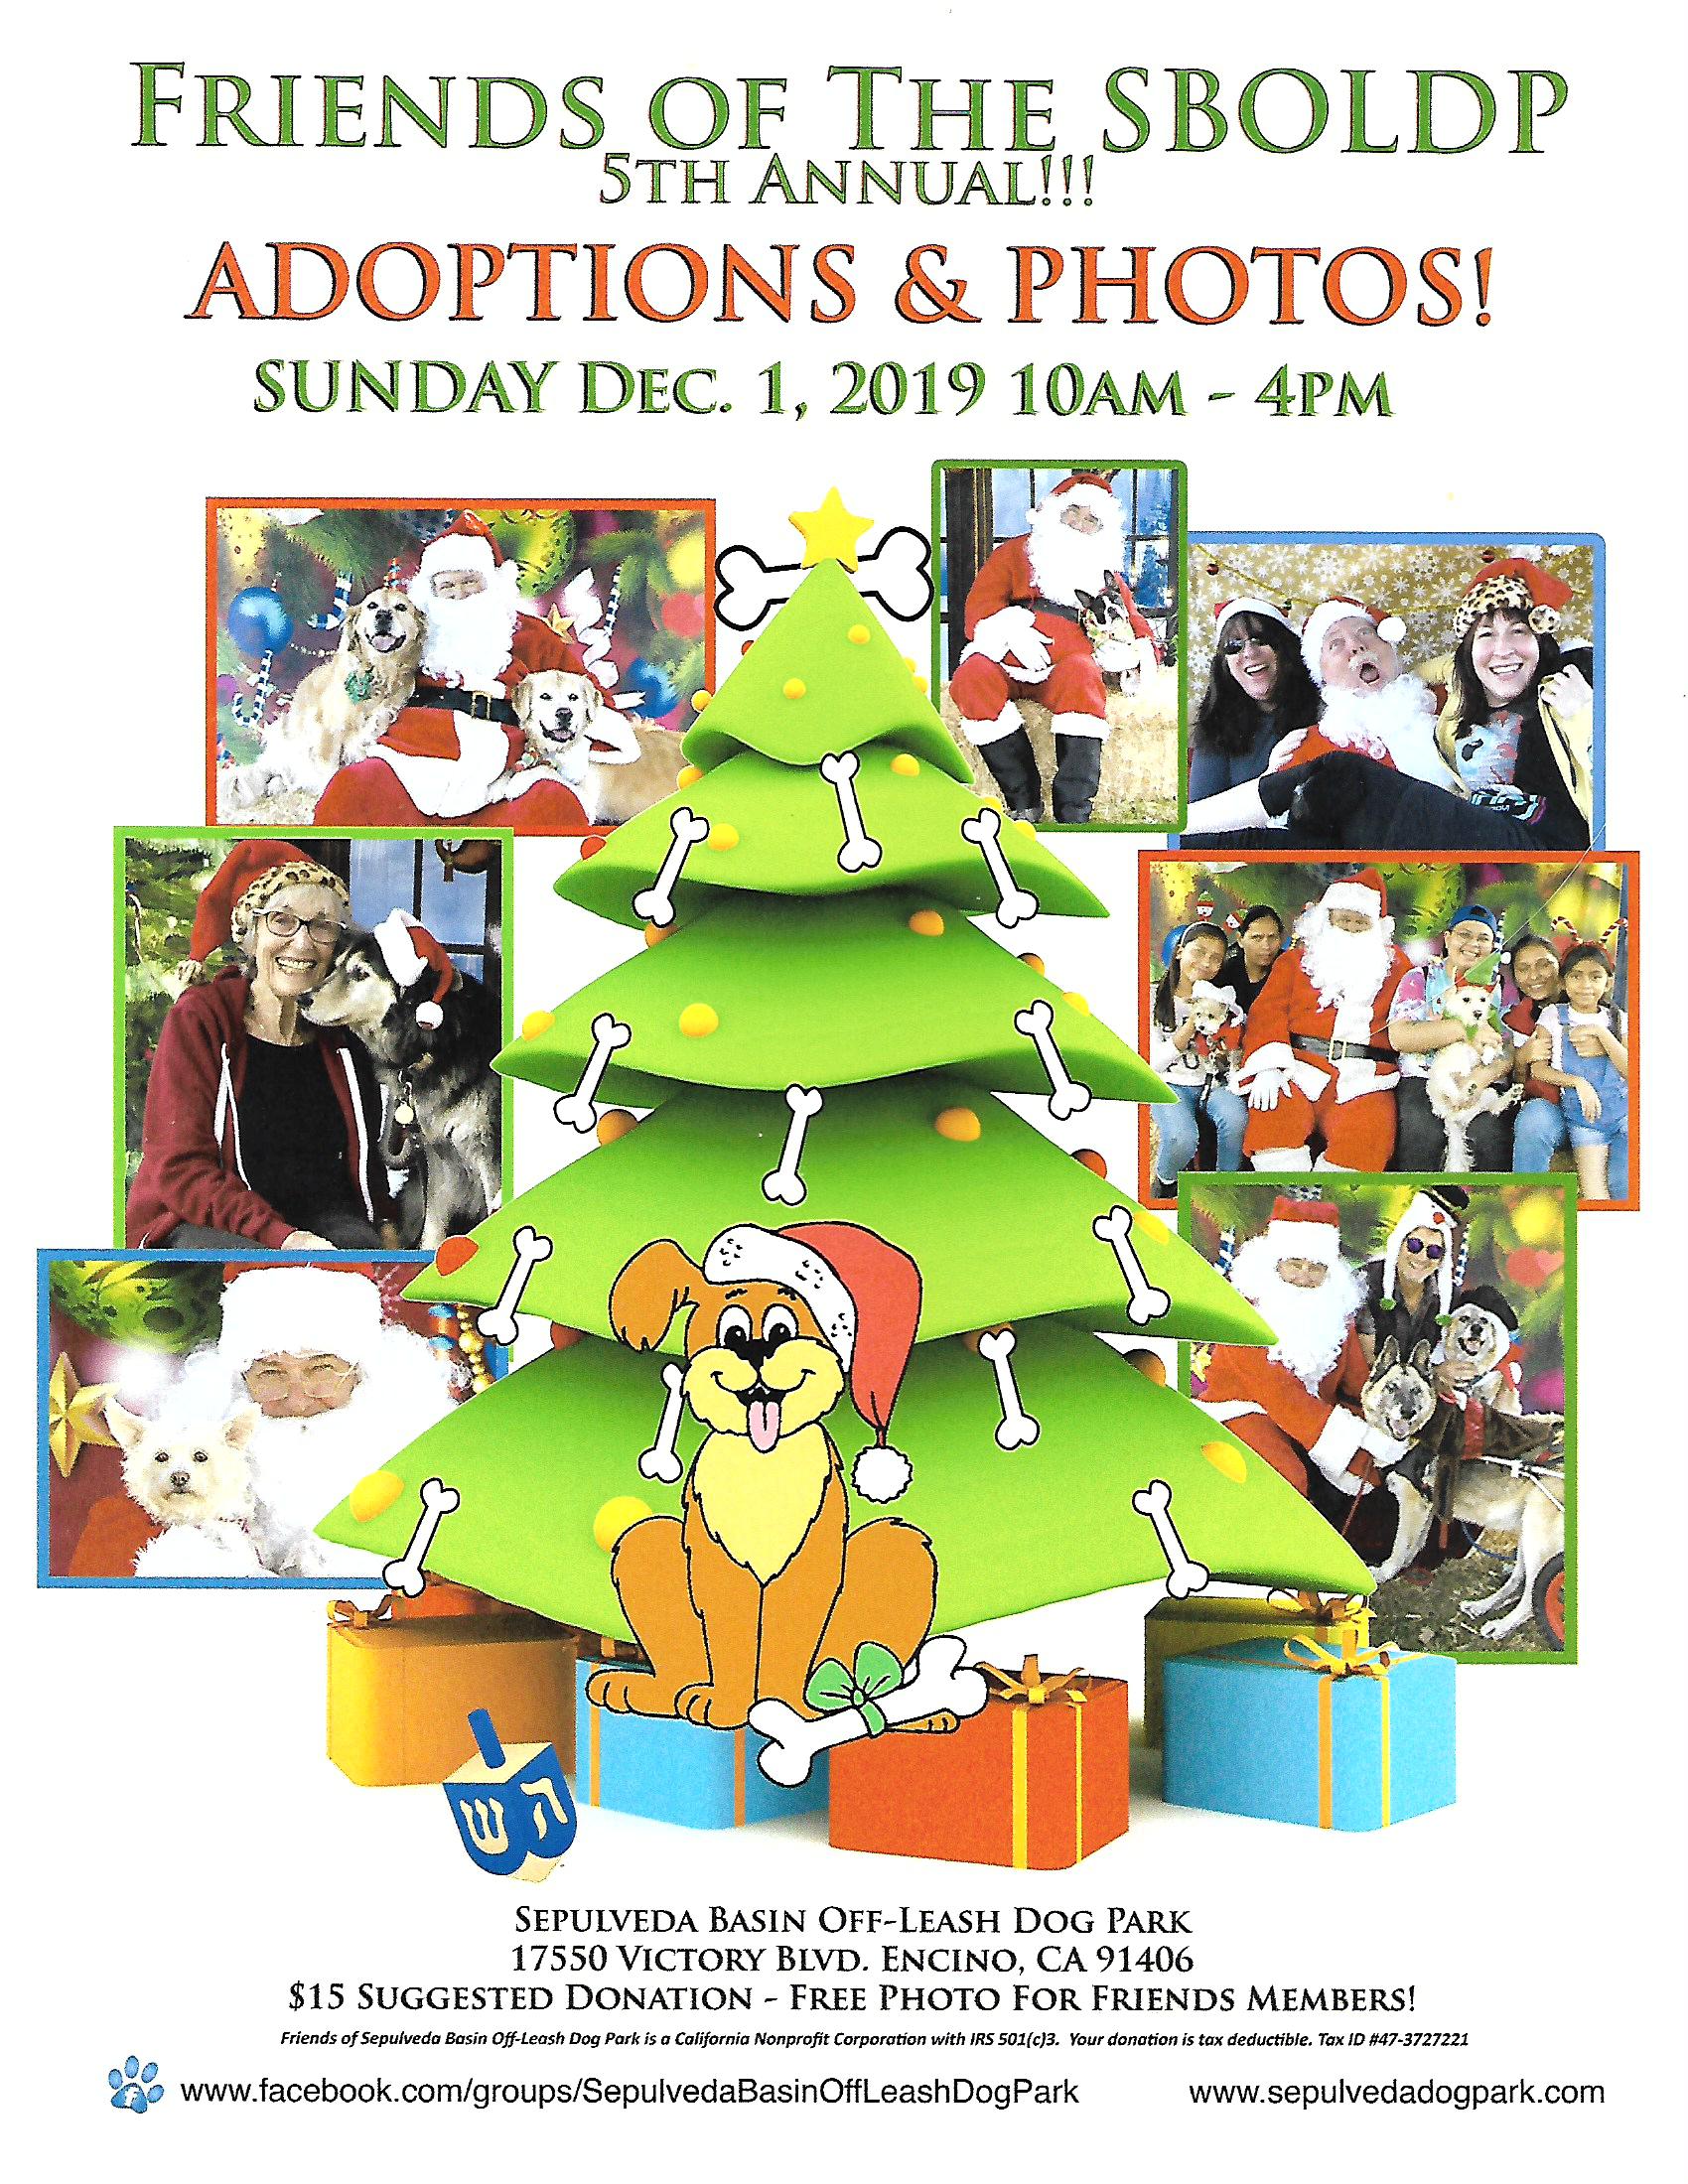 2019 Holiday Dog Adoptions and Photos at SBOLDP